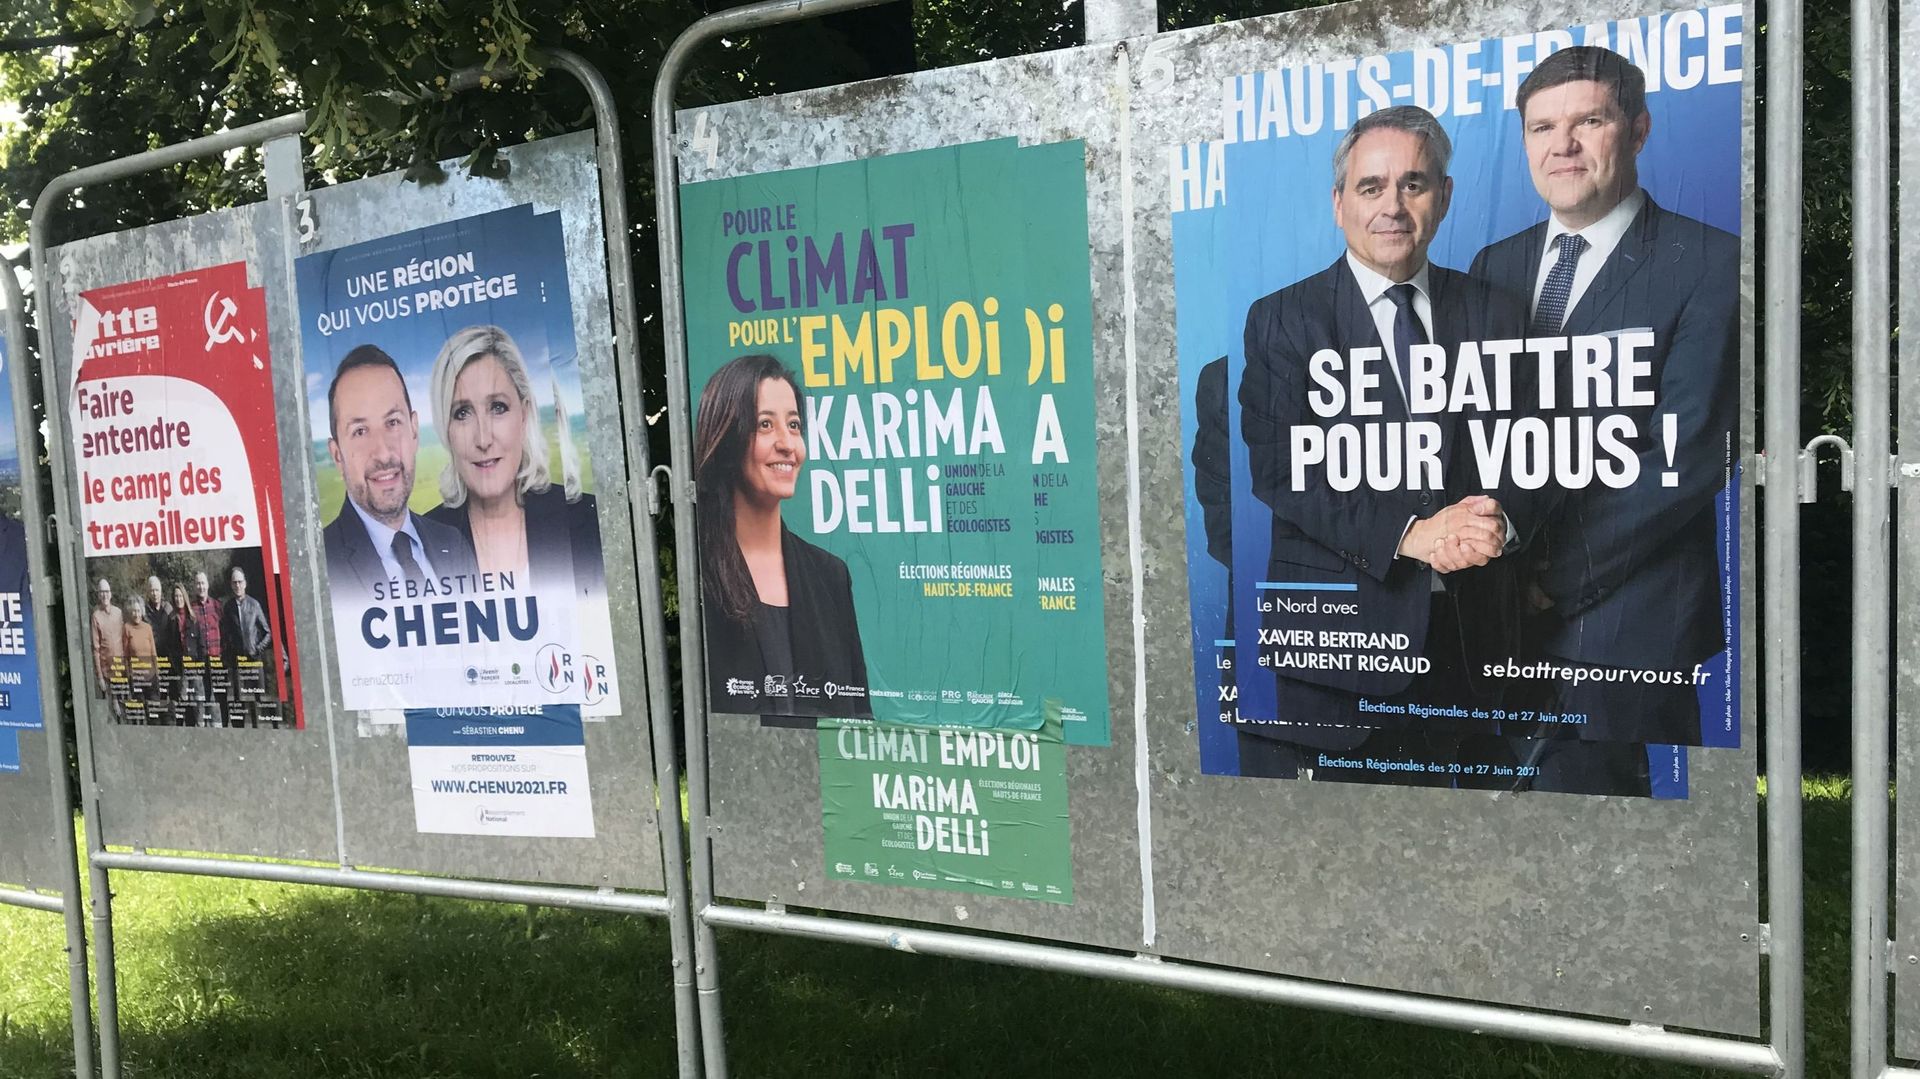 elections-francaises-xavier-bertrand-lhomme-du-nord-pourrait-il-perturber-un-duel-macron-le-pen-a-la-presidentielle